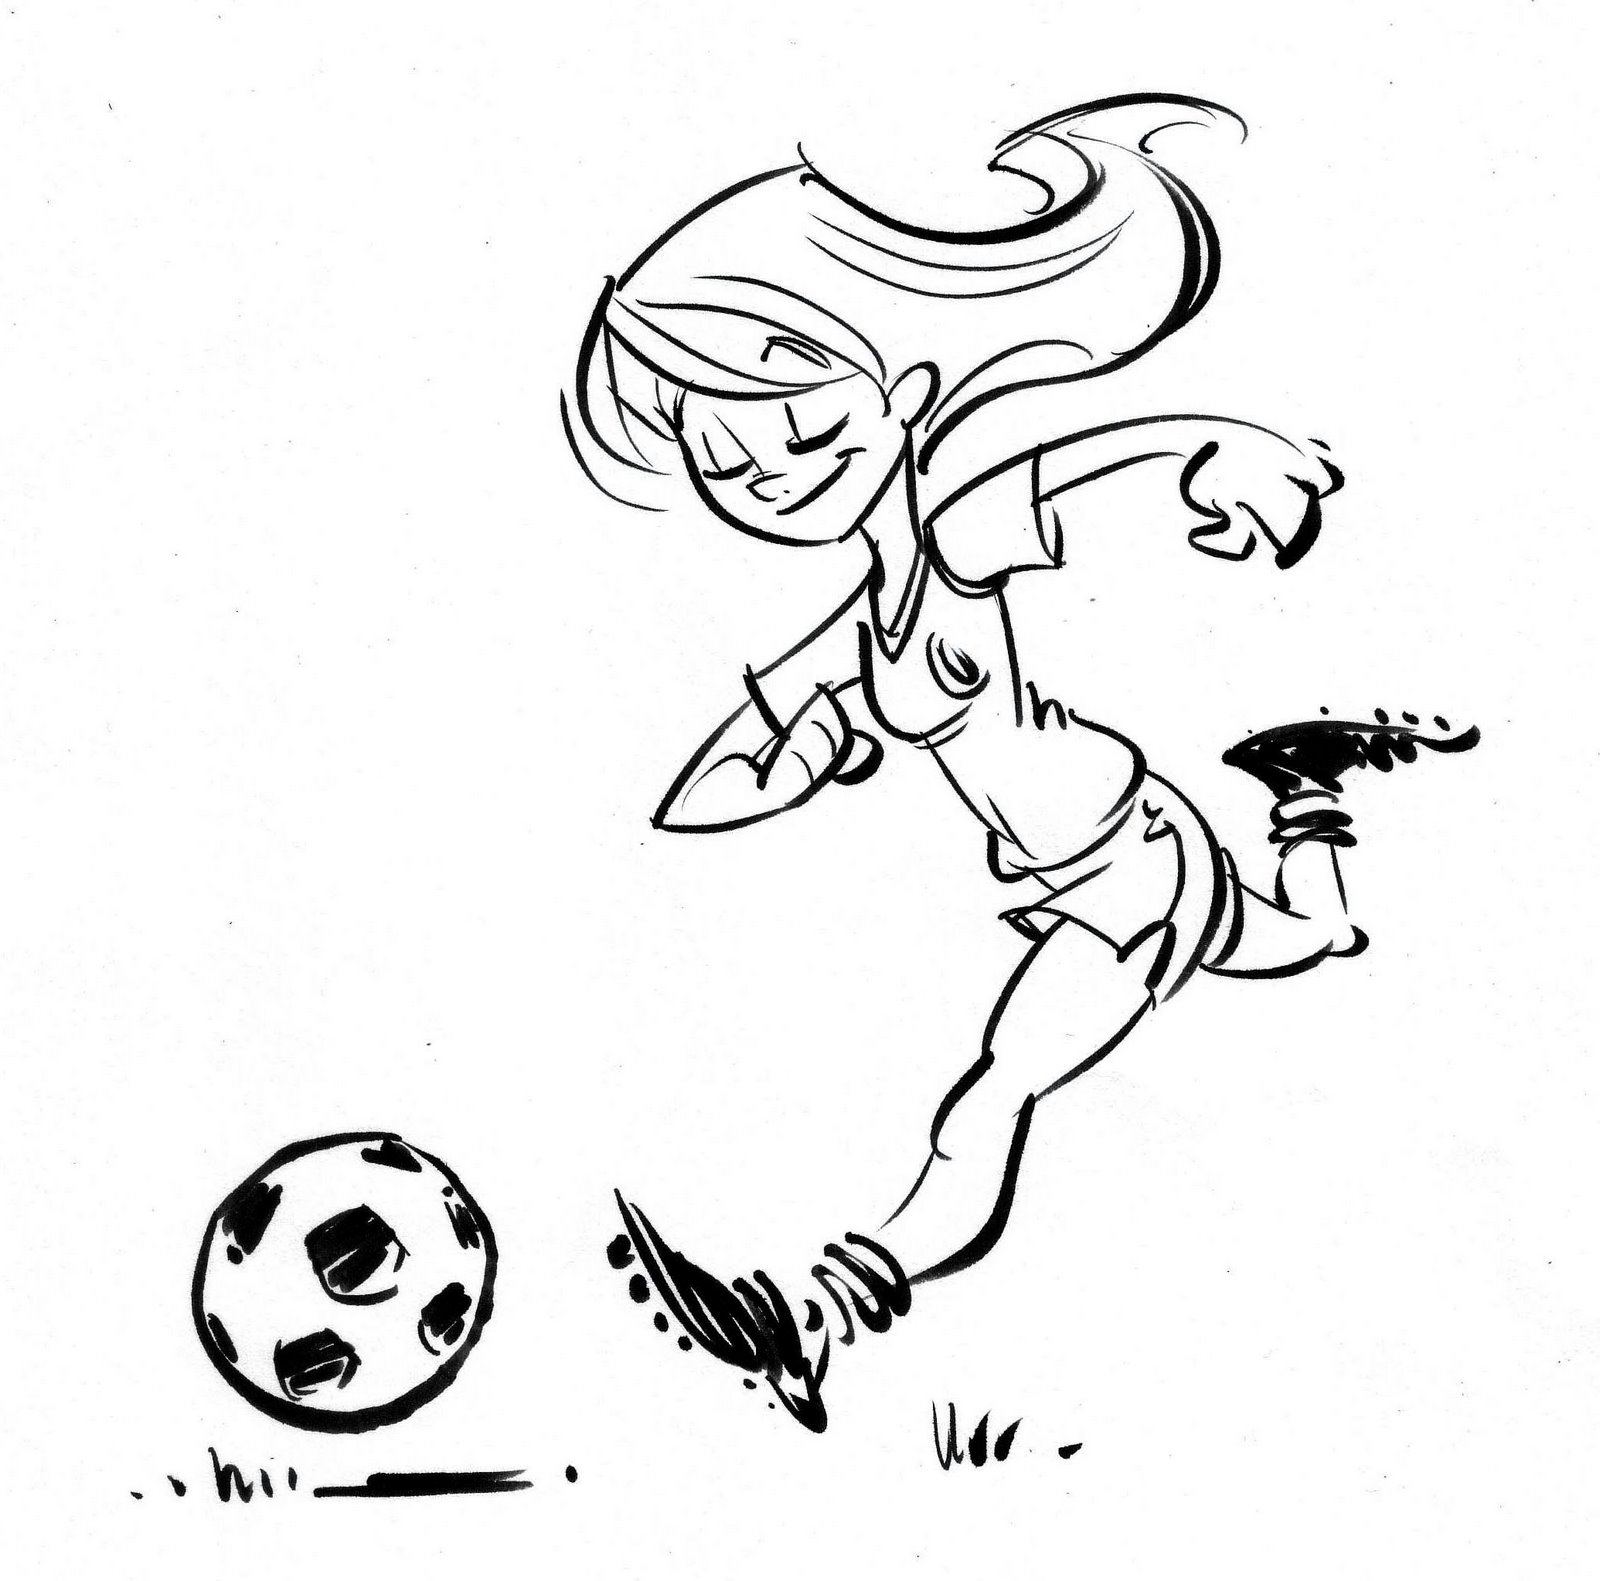 [soccergirl1.jpg]